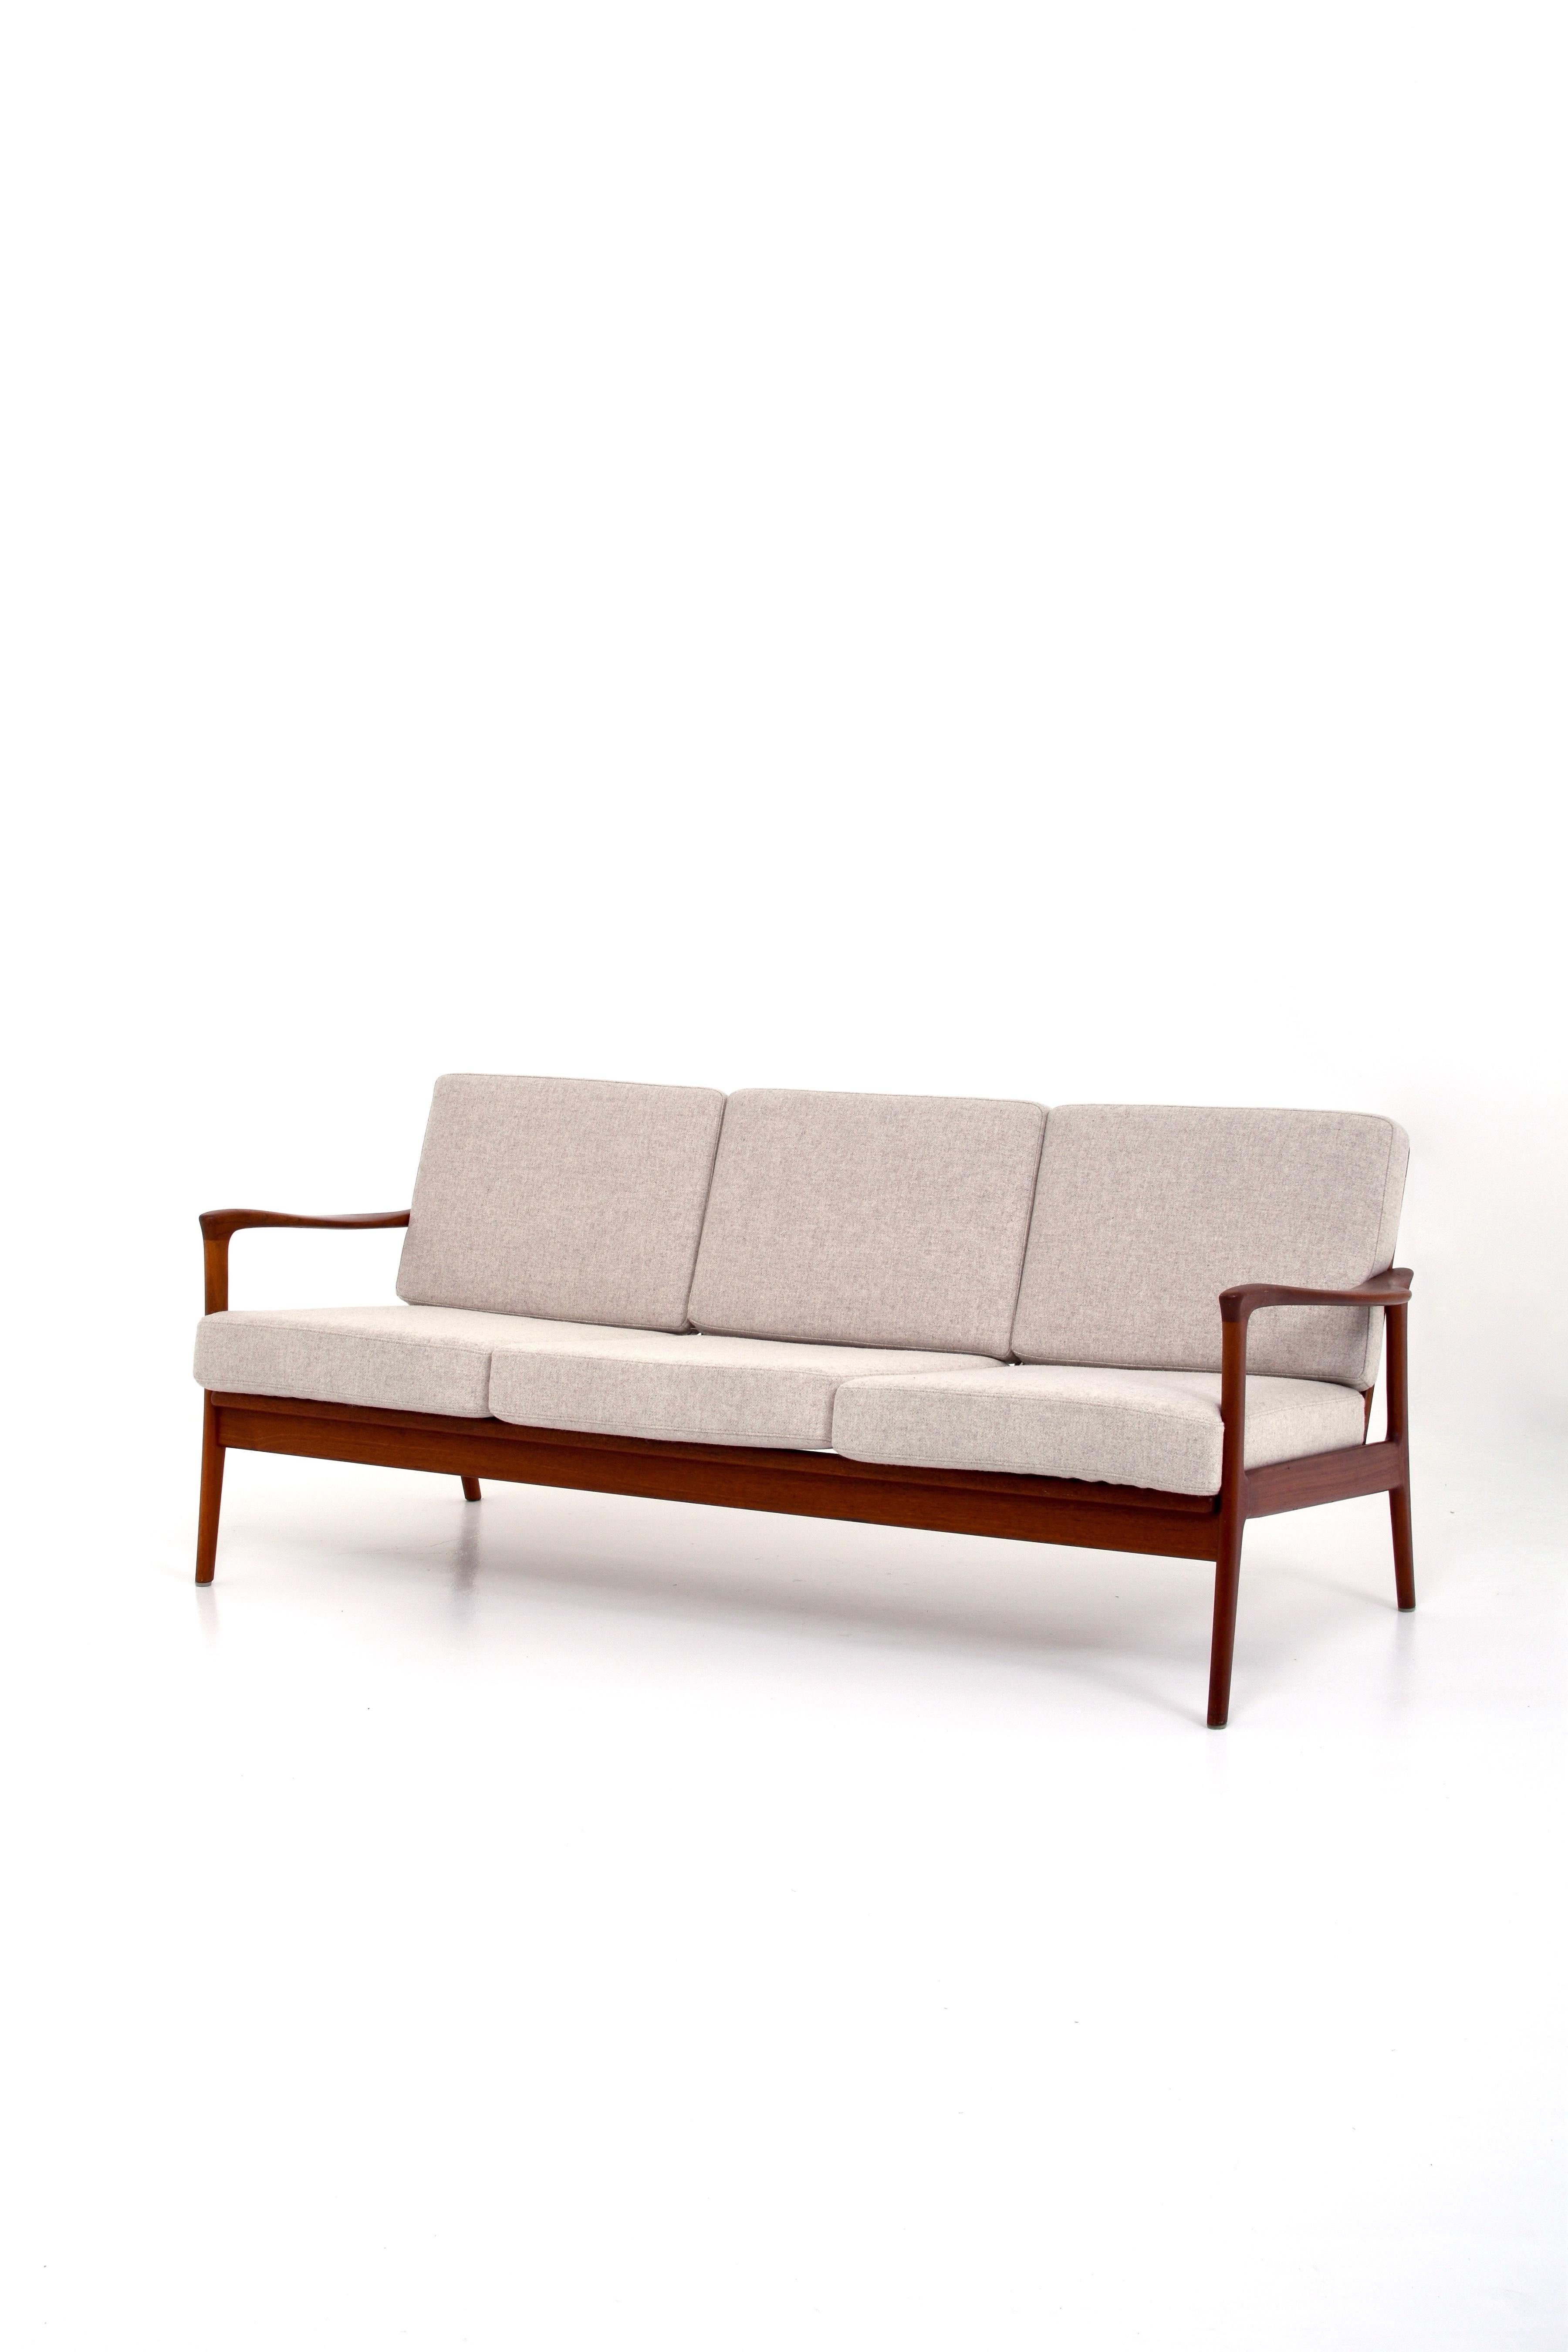 Swedish Vintage Scandinavian Modern Sofa by C.E. Johansson for Bejra Möbel For Sale